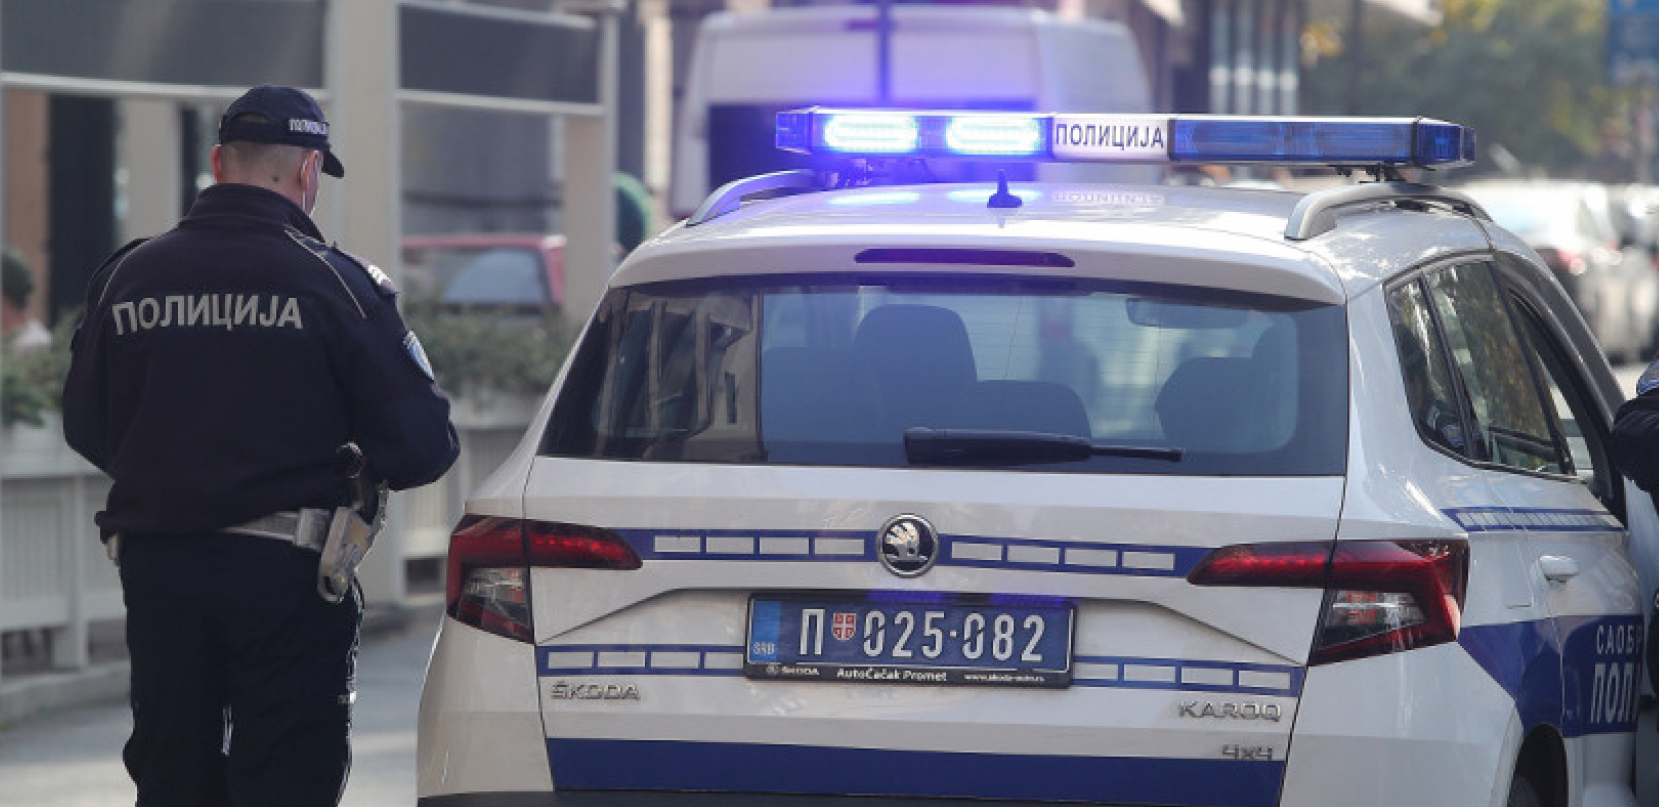 HAPŠENJE U KRUŠEVCU Policija raskrinkala dve osobe zbog proizvodnje i trgovine opojnim drogama (FOTO)